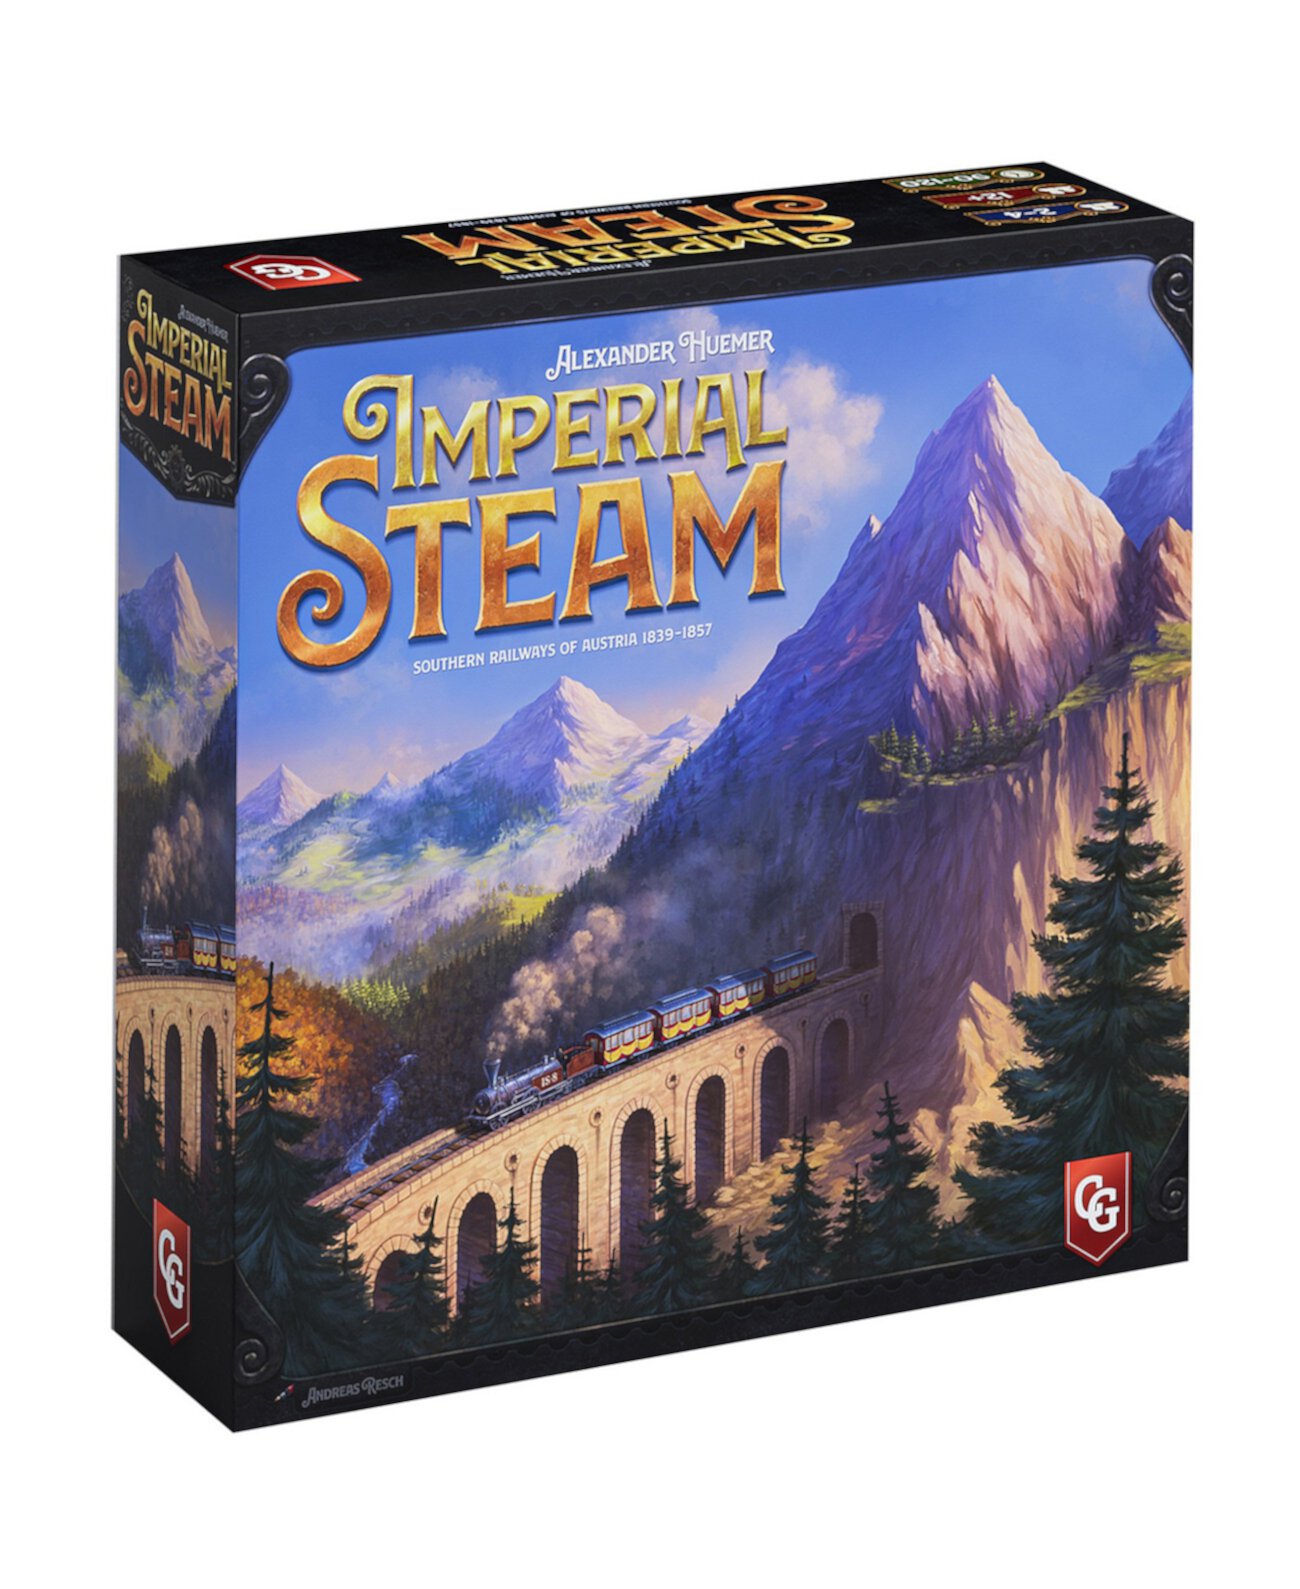 Стратегическая настольная игра Imperial Steam, 893 предмета Capstone Games